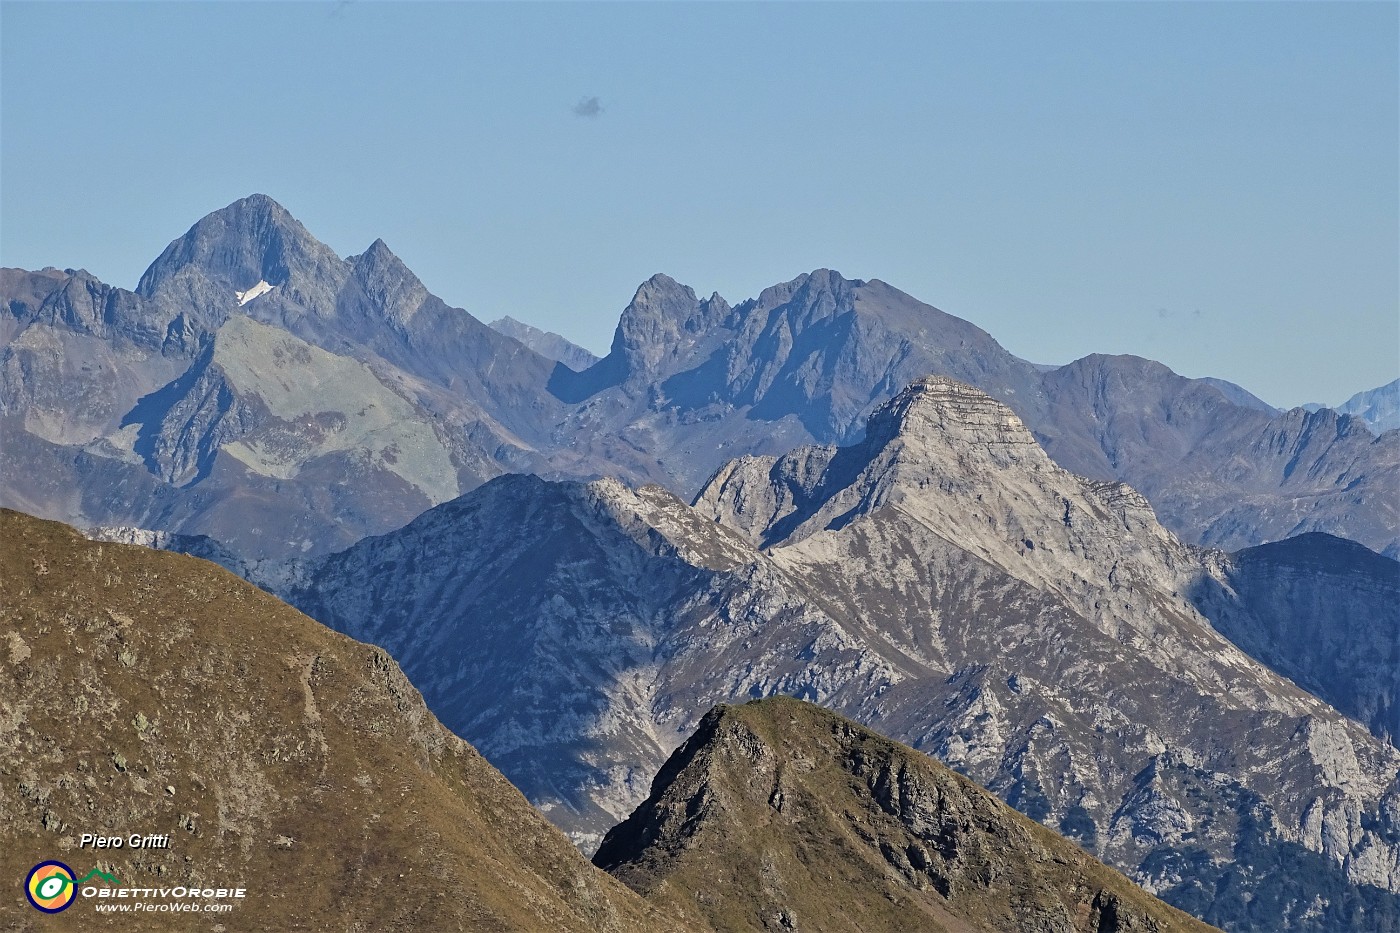 44 Vista panoramica con zoom verso la costiera Cavallo-Pegherolo in primo piano e Pizzo del Diavolo e - in secondo piano.JPG